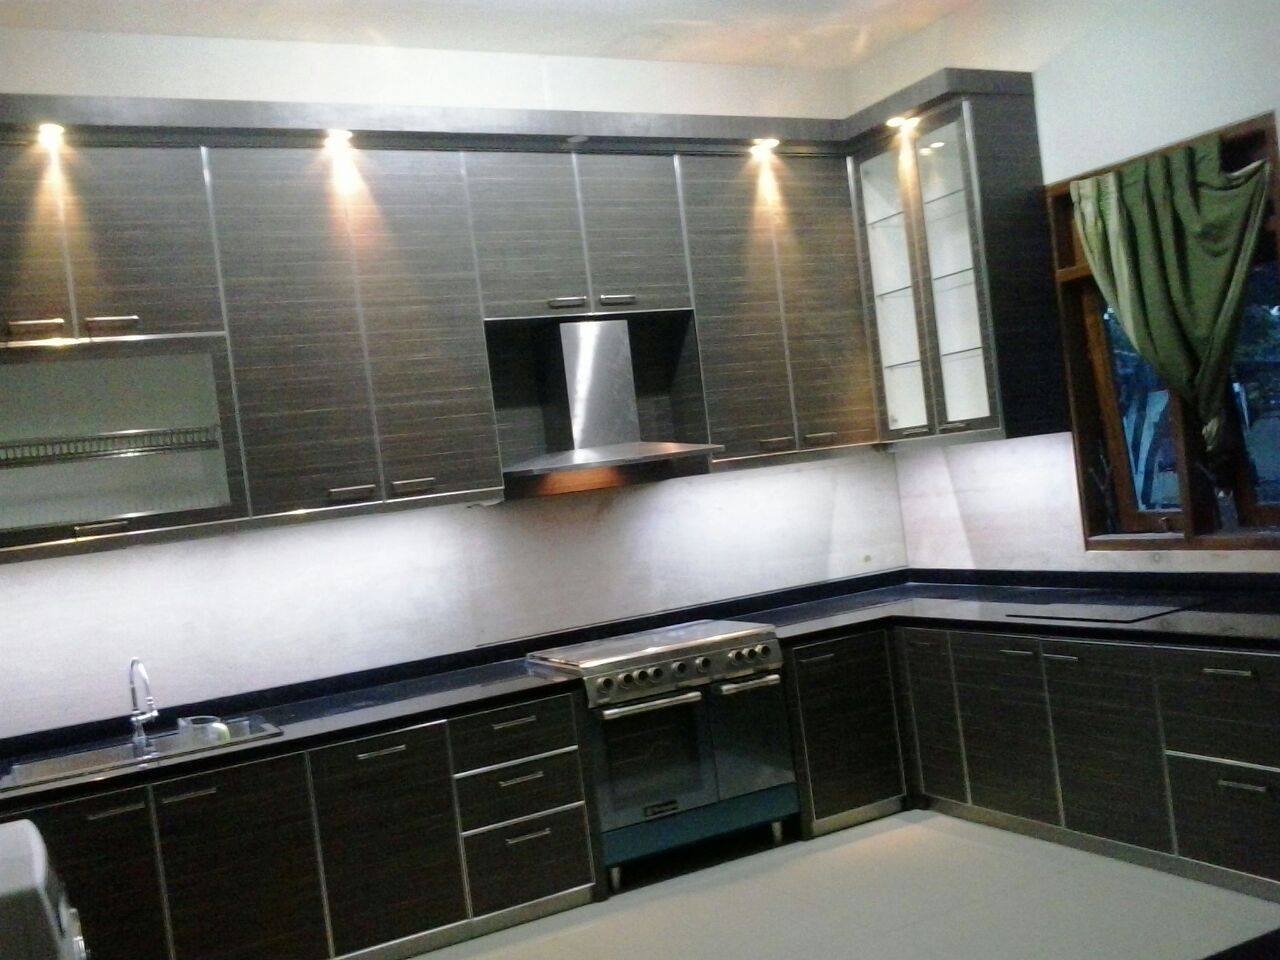 kitchen set di jakarta design center